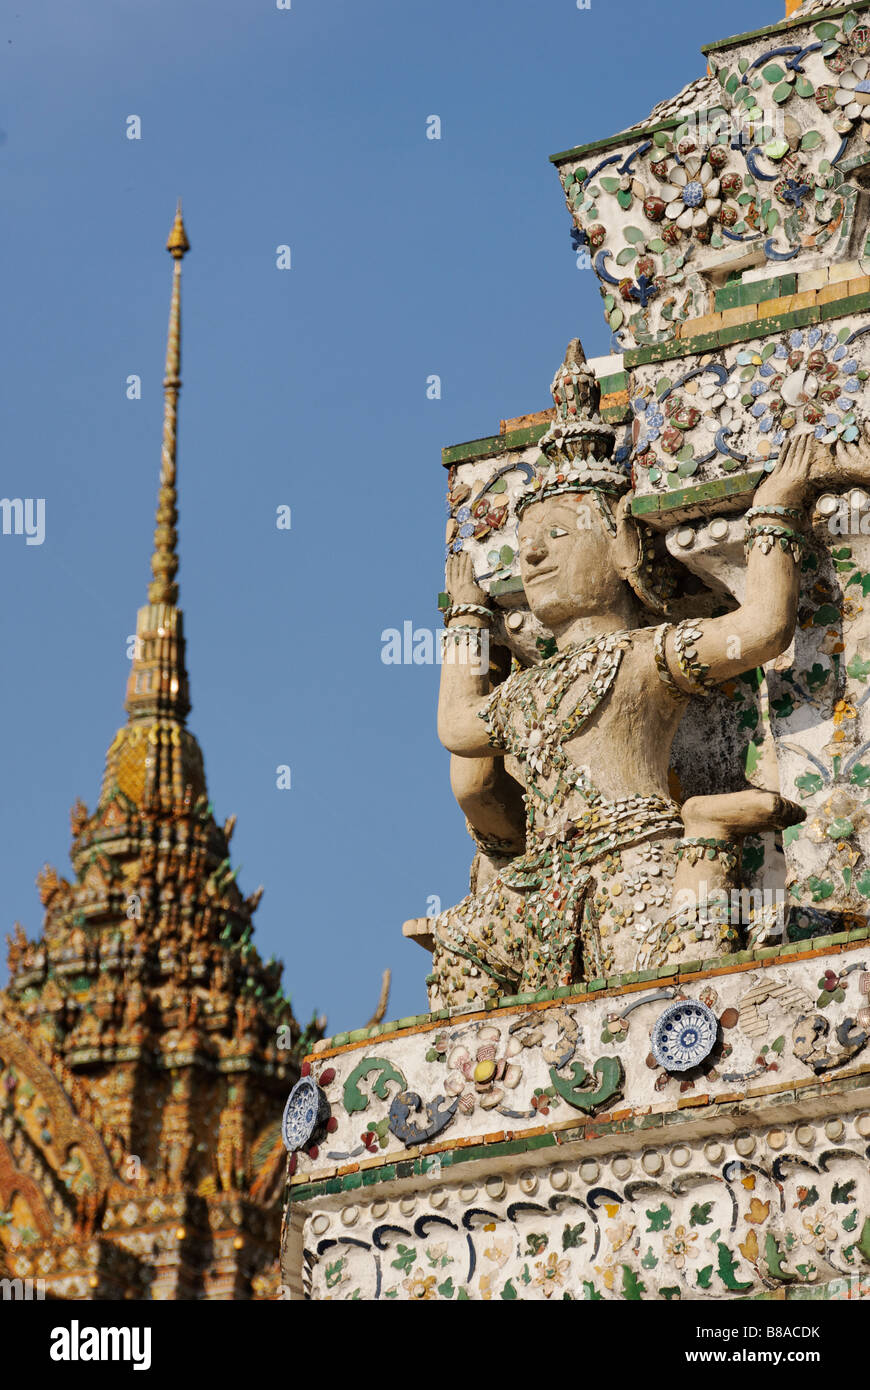 Détail des carreaux de céramique et statue - Wat Arun temple bouddhiste à Bangkok. Thaïlande Banque D'Images